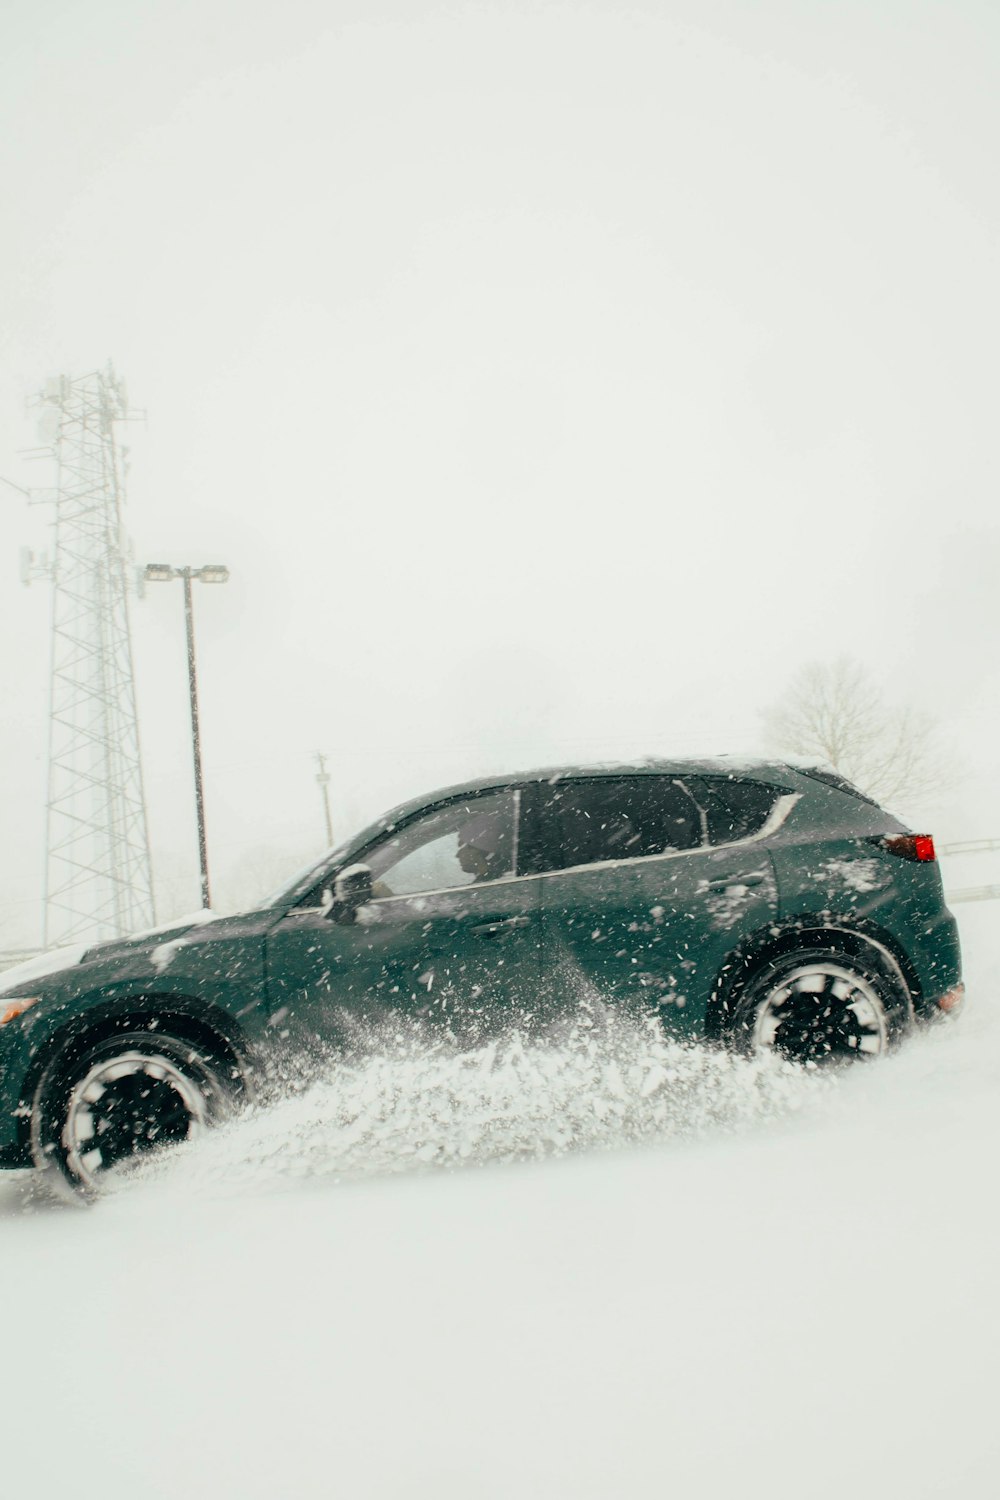 Un SUV verde conduciendo a través de un campo cubierto de nieve